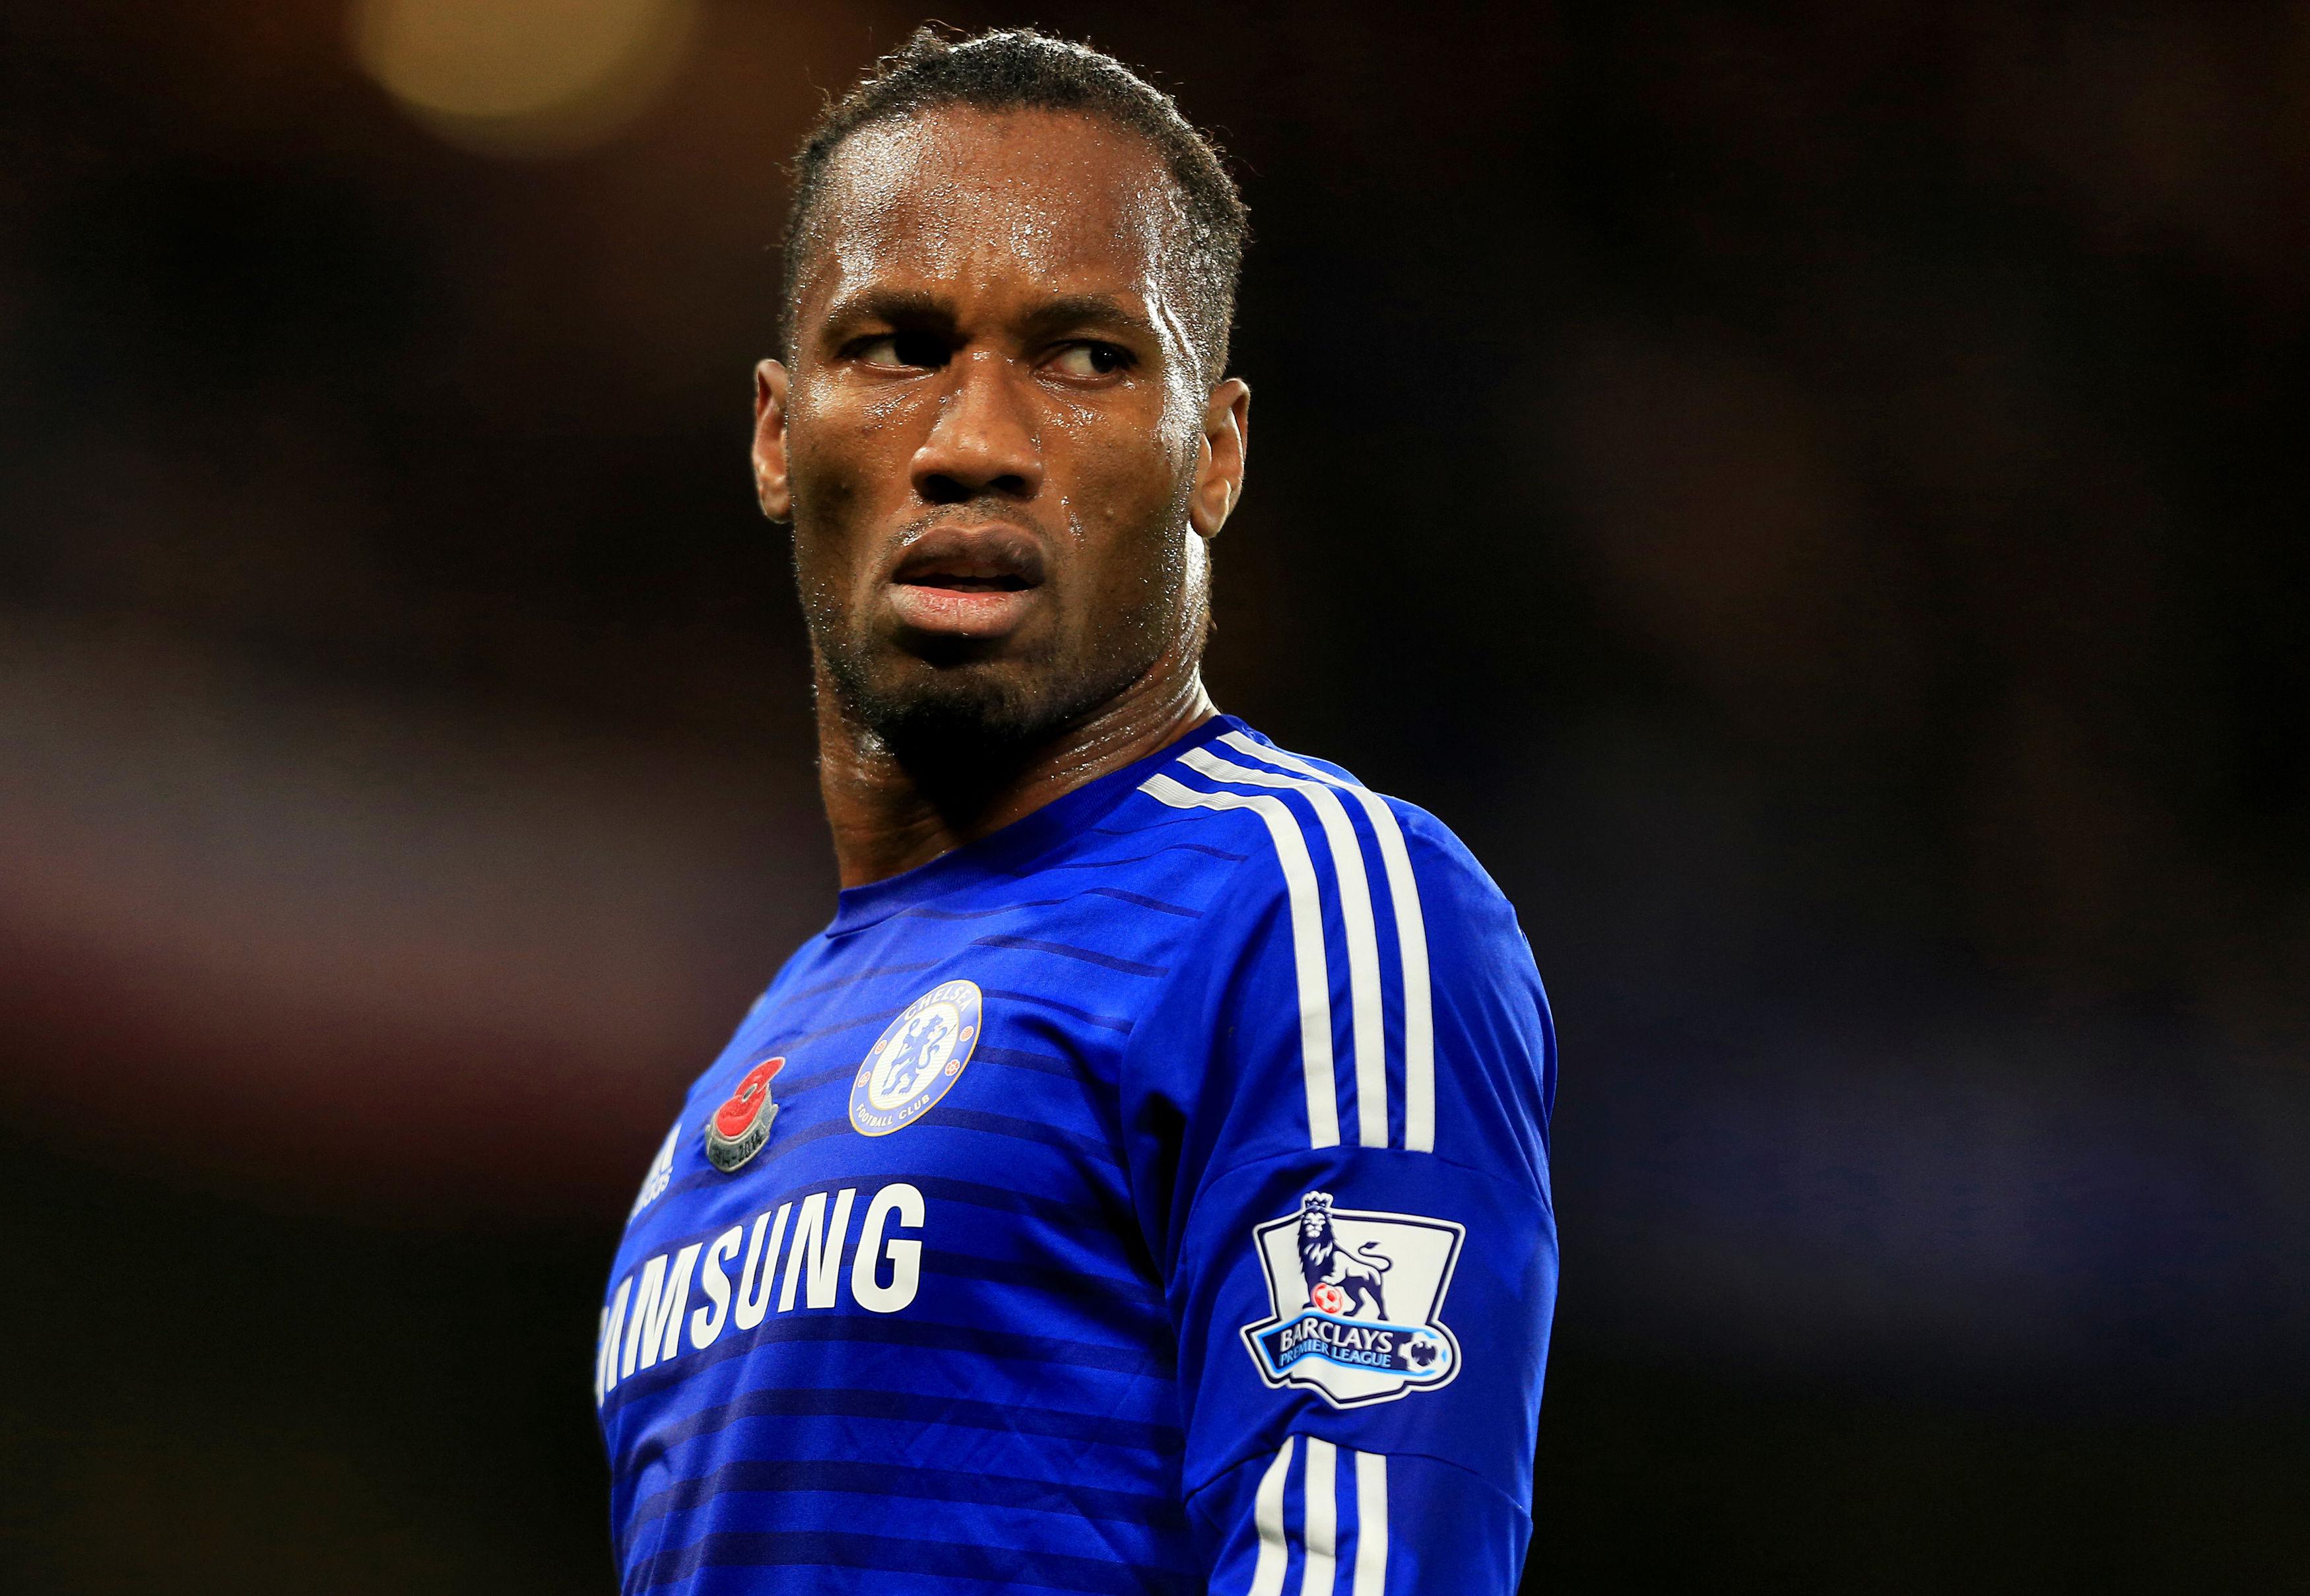 “Ya no reconozco a mi club”: Las duras palabras de Drogba contra el propietario del Chelsea